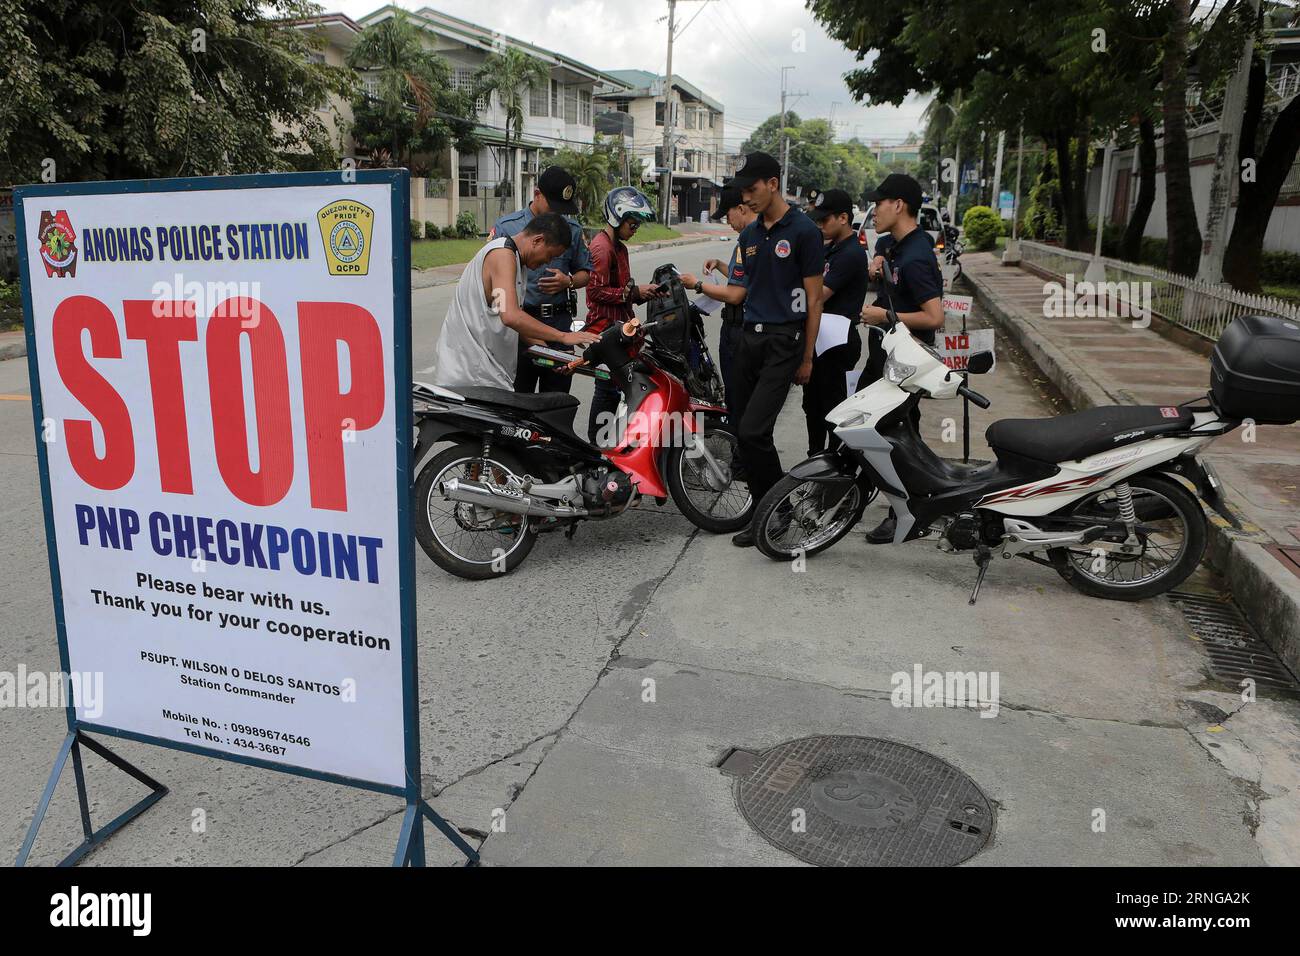 (160915) -- QUEZON CITY, 15. September 2016 -- Polizisten der philippinischen Nationalpolizei (PNP) führen einen Checkpoint an einer Straße in Quezon City, Philippinen, 15. September 2016 durch. Die PNP und die Streitkräfte der Philippinen verstärkten die Sicherheitsmaßnahmen im Land, nachdem Präsident Rodrigo Duterte den nationalen Notstand wegen gesetzloser Gewalt ausgerufen hatte. ) PHILIPPINEN-QUEZON CITY-SECURITY RouellexUmali PUBLICATIONxNOTxINxCHN 160915 Quezon City September 15 2016 Polizisten der Philippine National Police PNP Führen einen Checkpoint AN einer Straße in Quezon City der Philipp durch Stockfoto